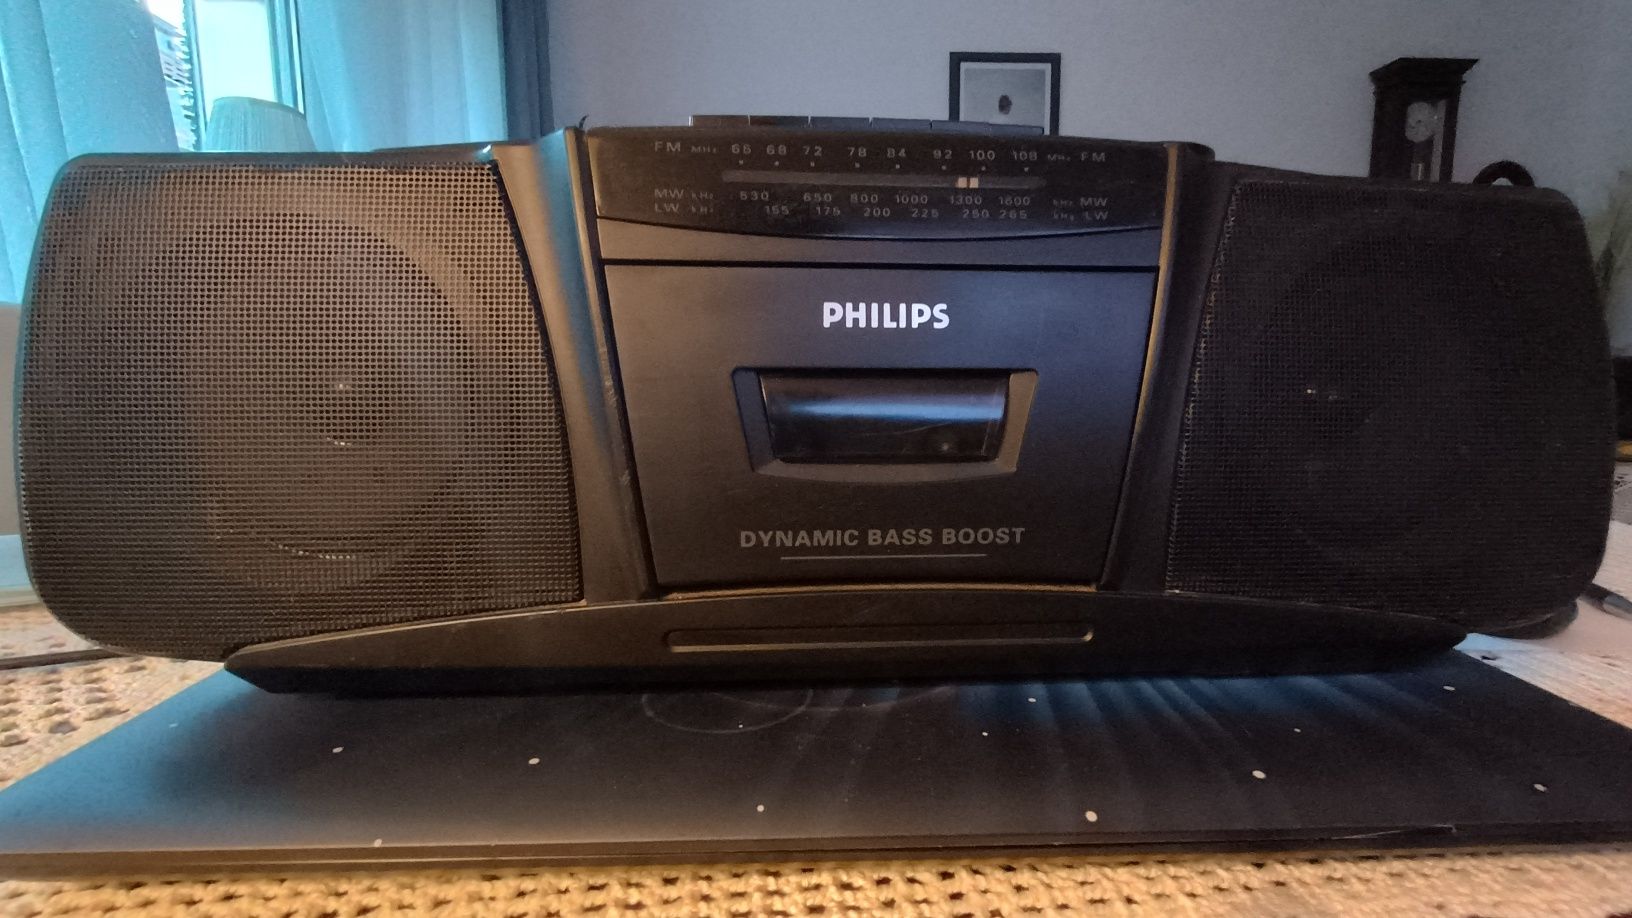 Phillips radiomagnetofon przycisk ekstra bas